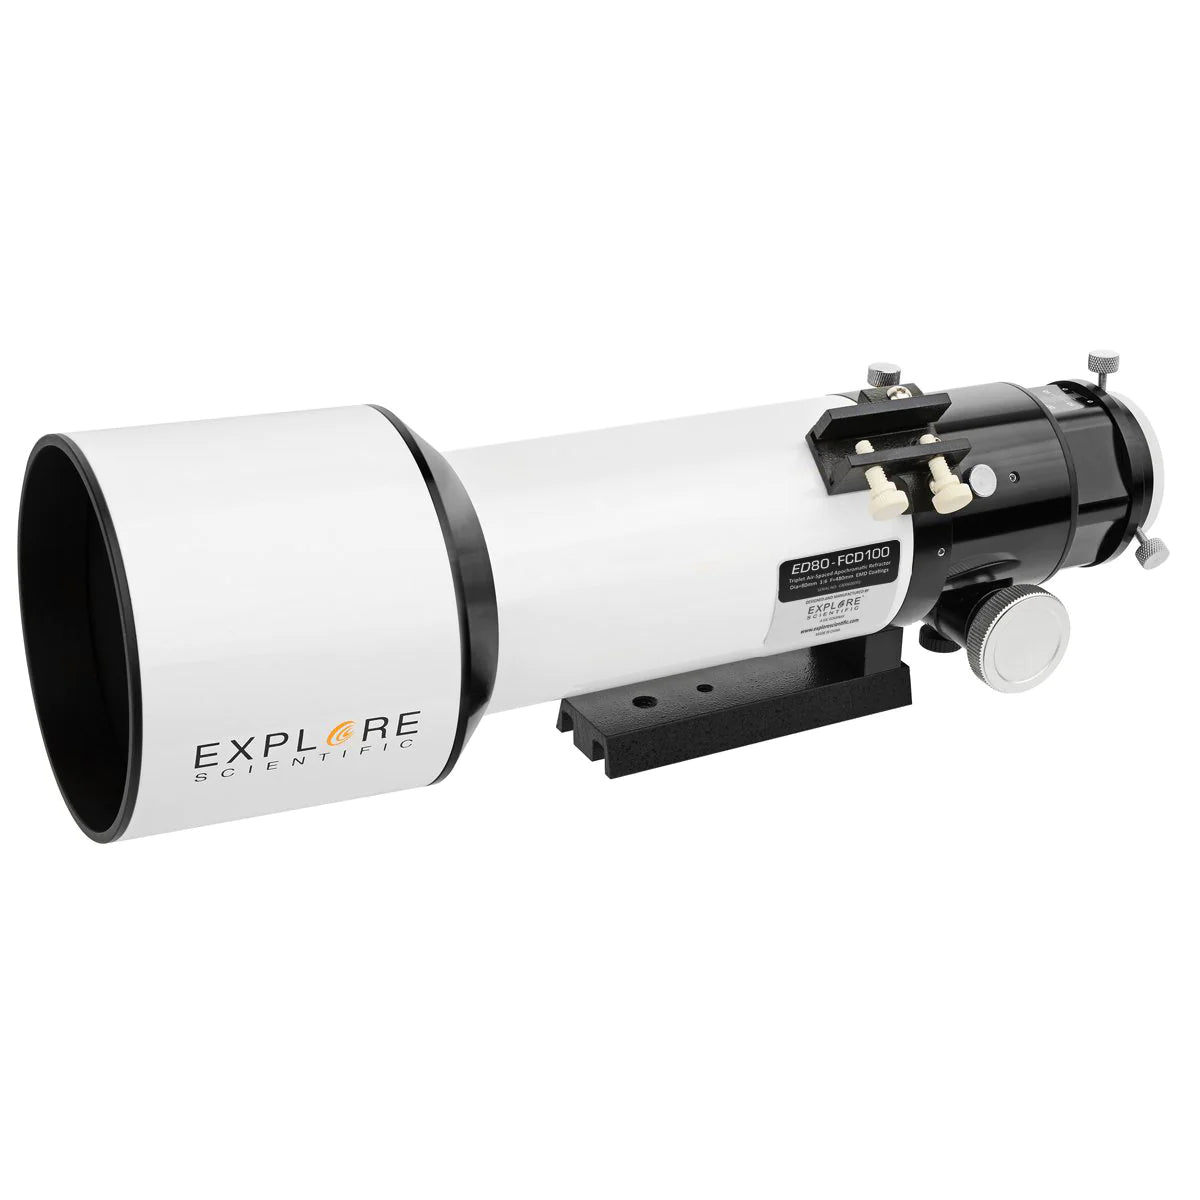 Explore Scientific ED80-FCD100 Series Air-Spaced Triplet Refractor